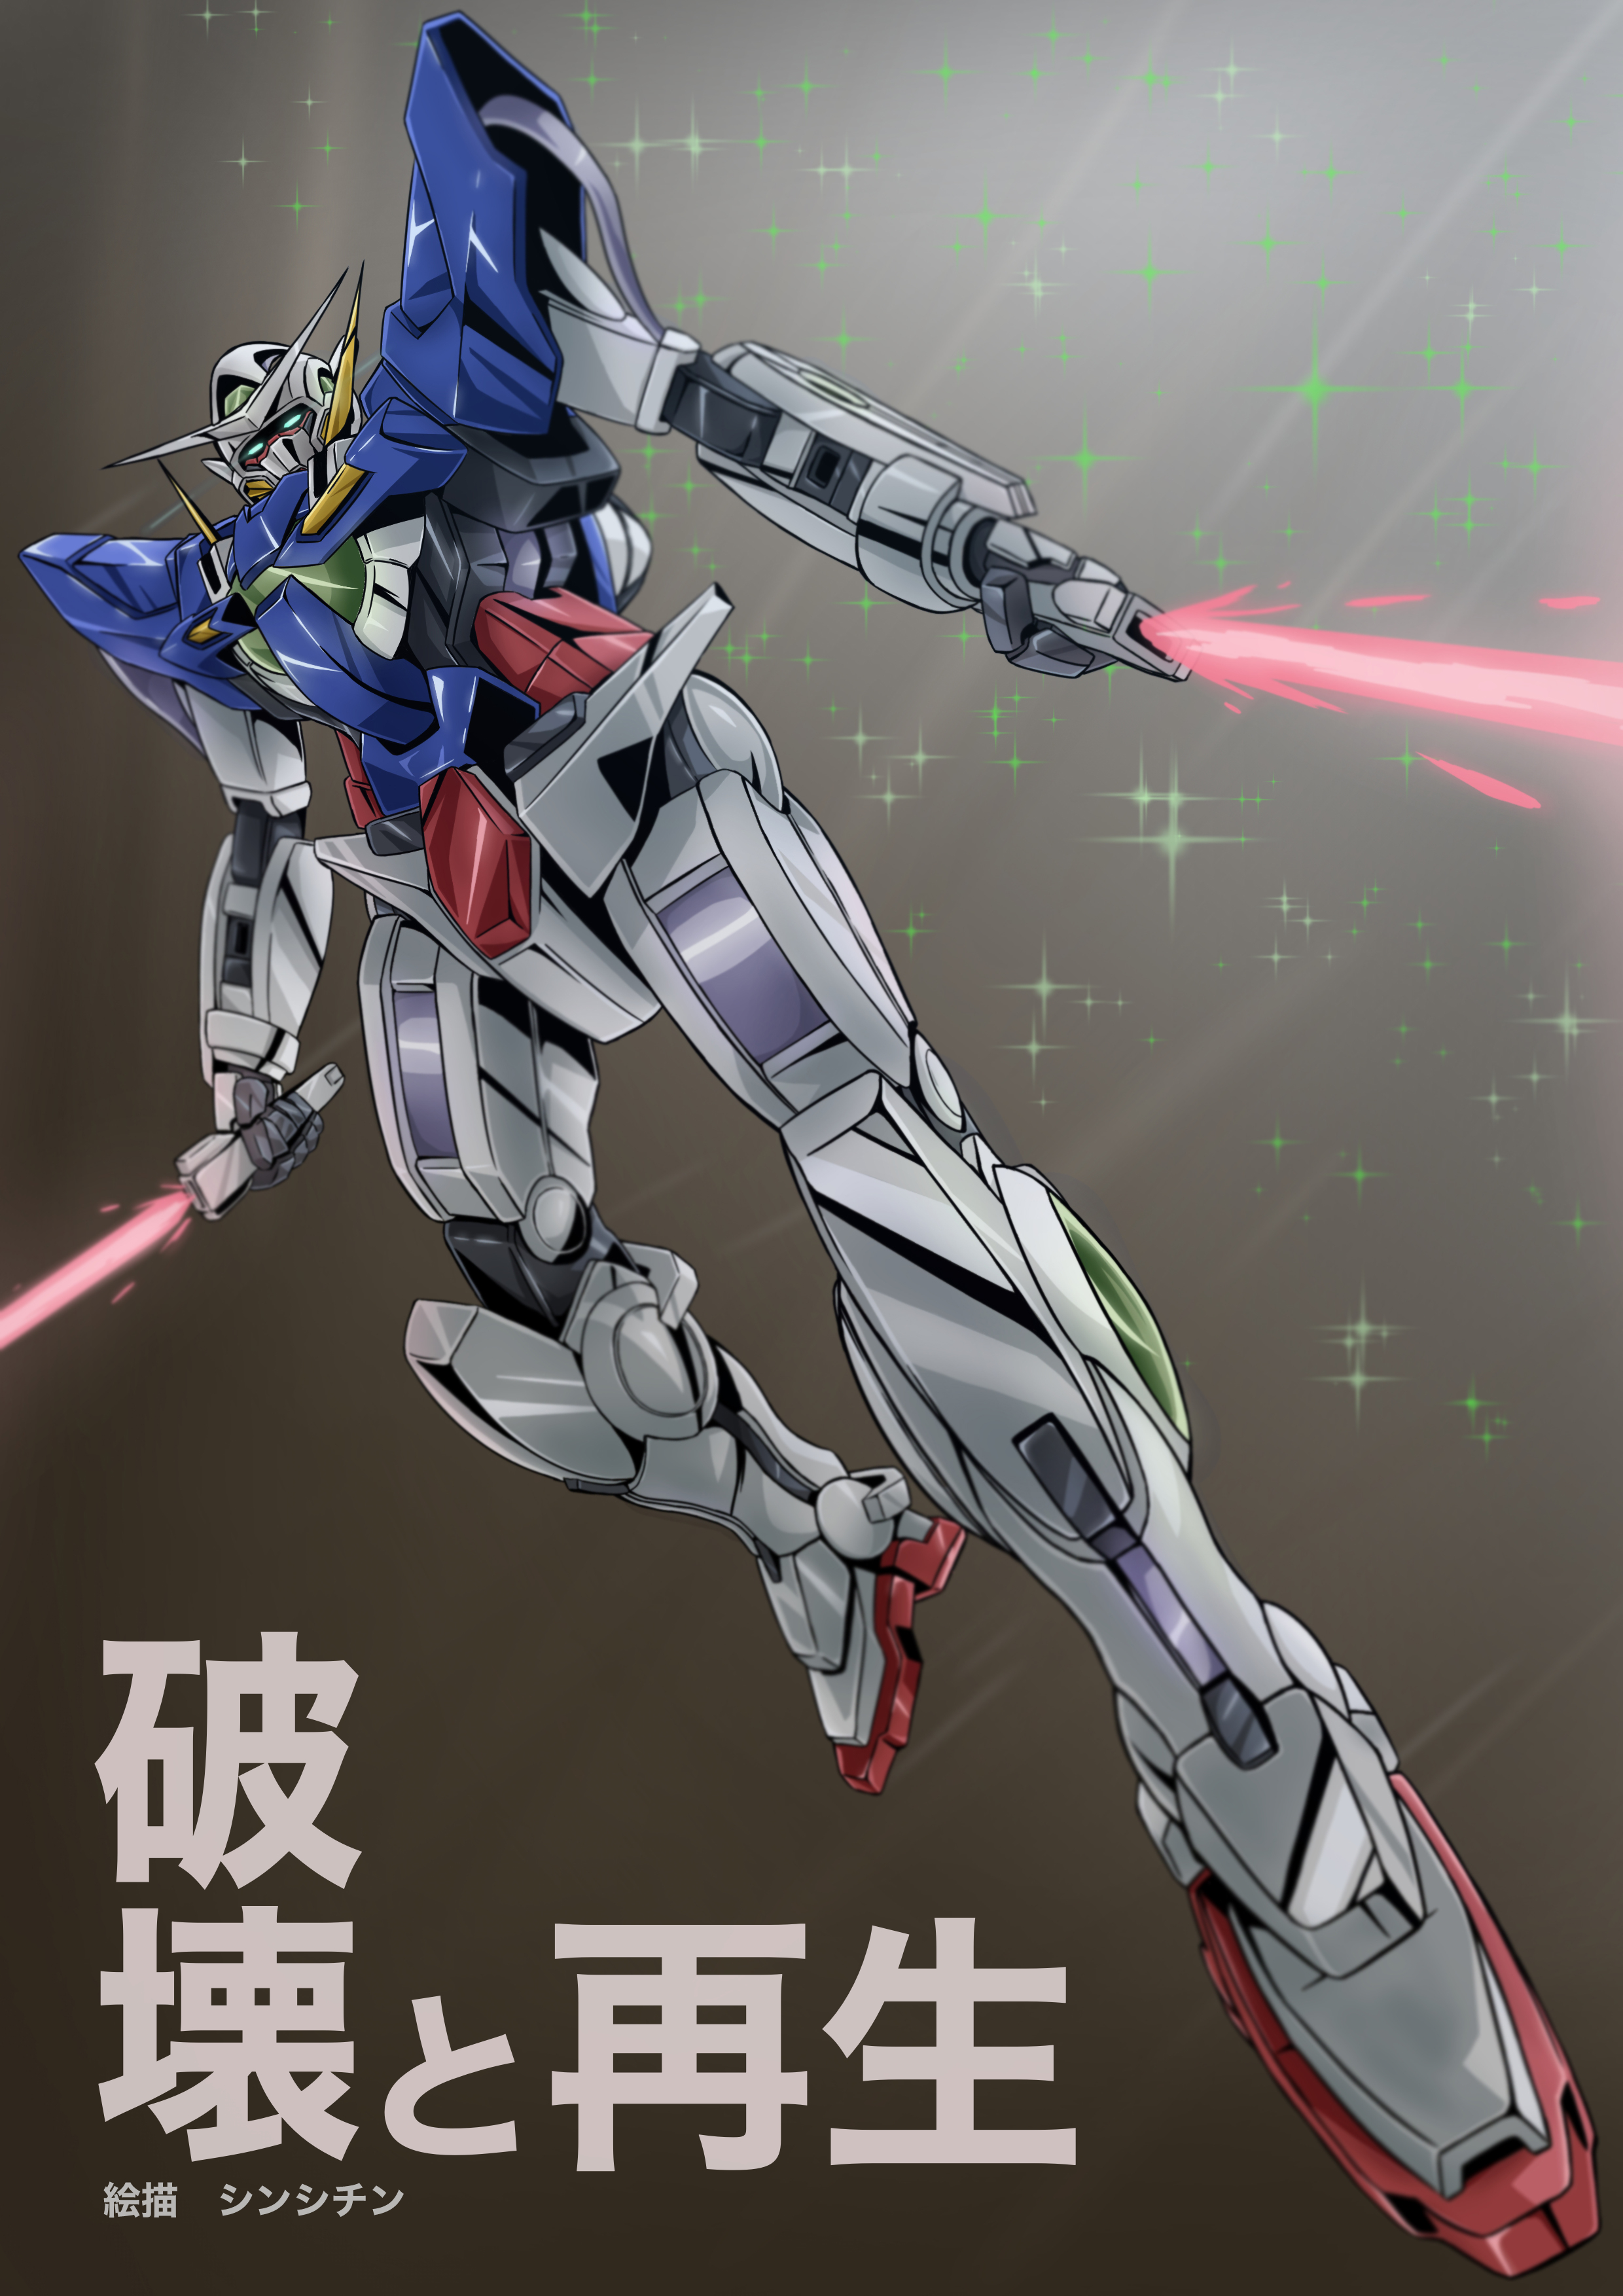 Anime 2480x3508 anime mechs Super Robot Taisen Gundam Mobile Suit Gundam 00 Gundam Exia artwork digital art fan art Japanese